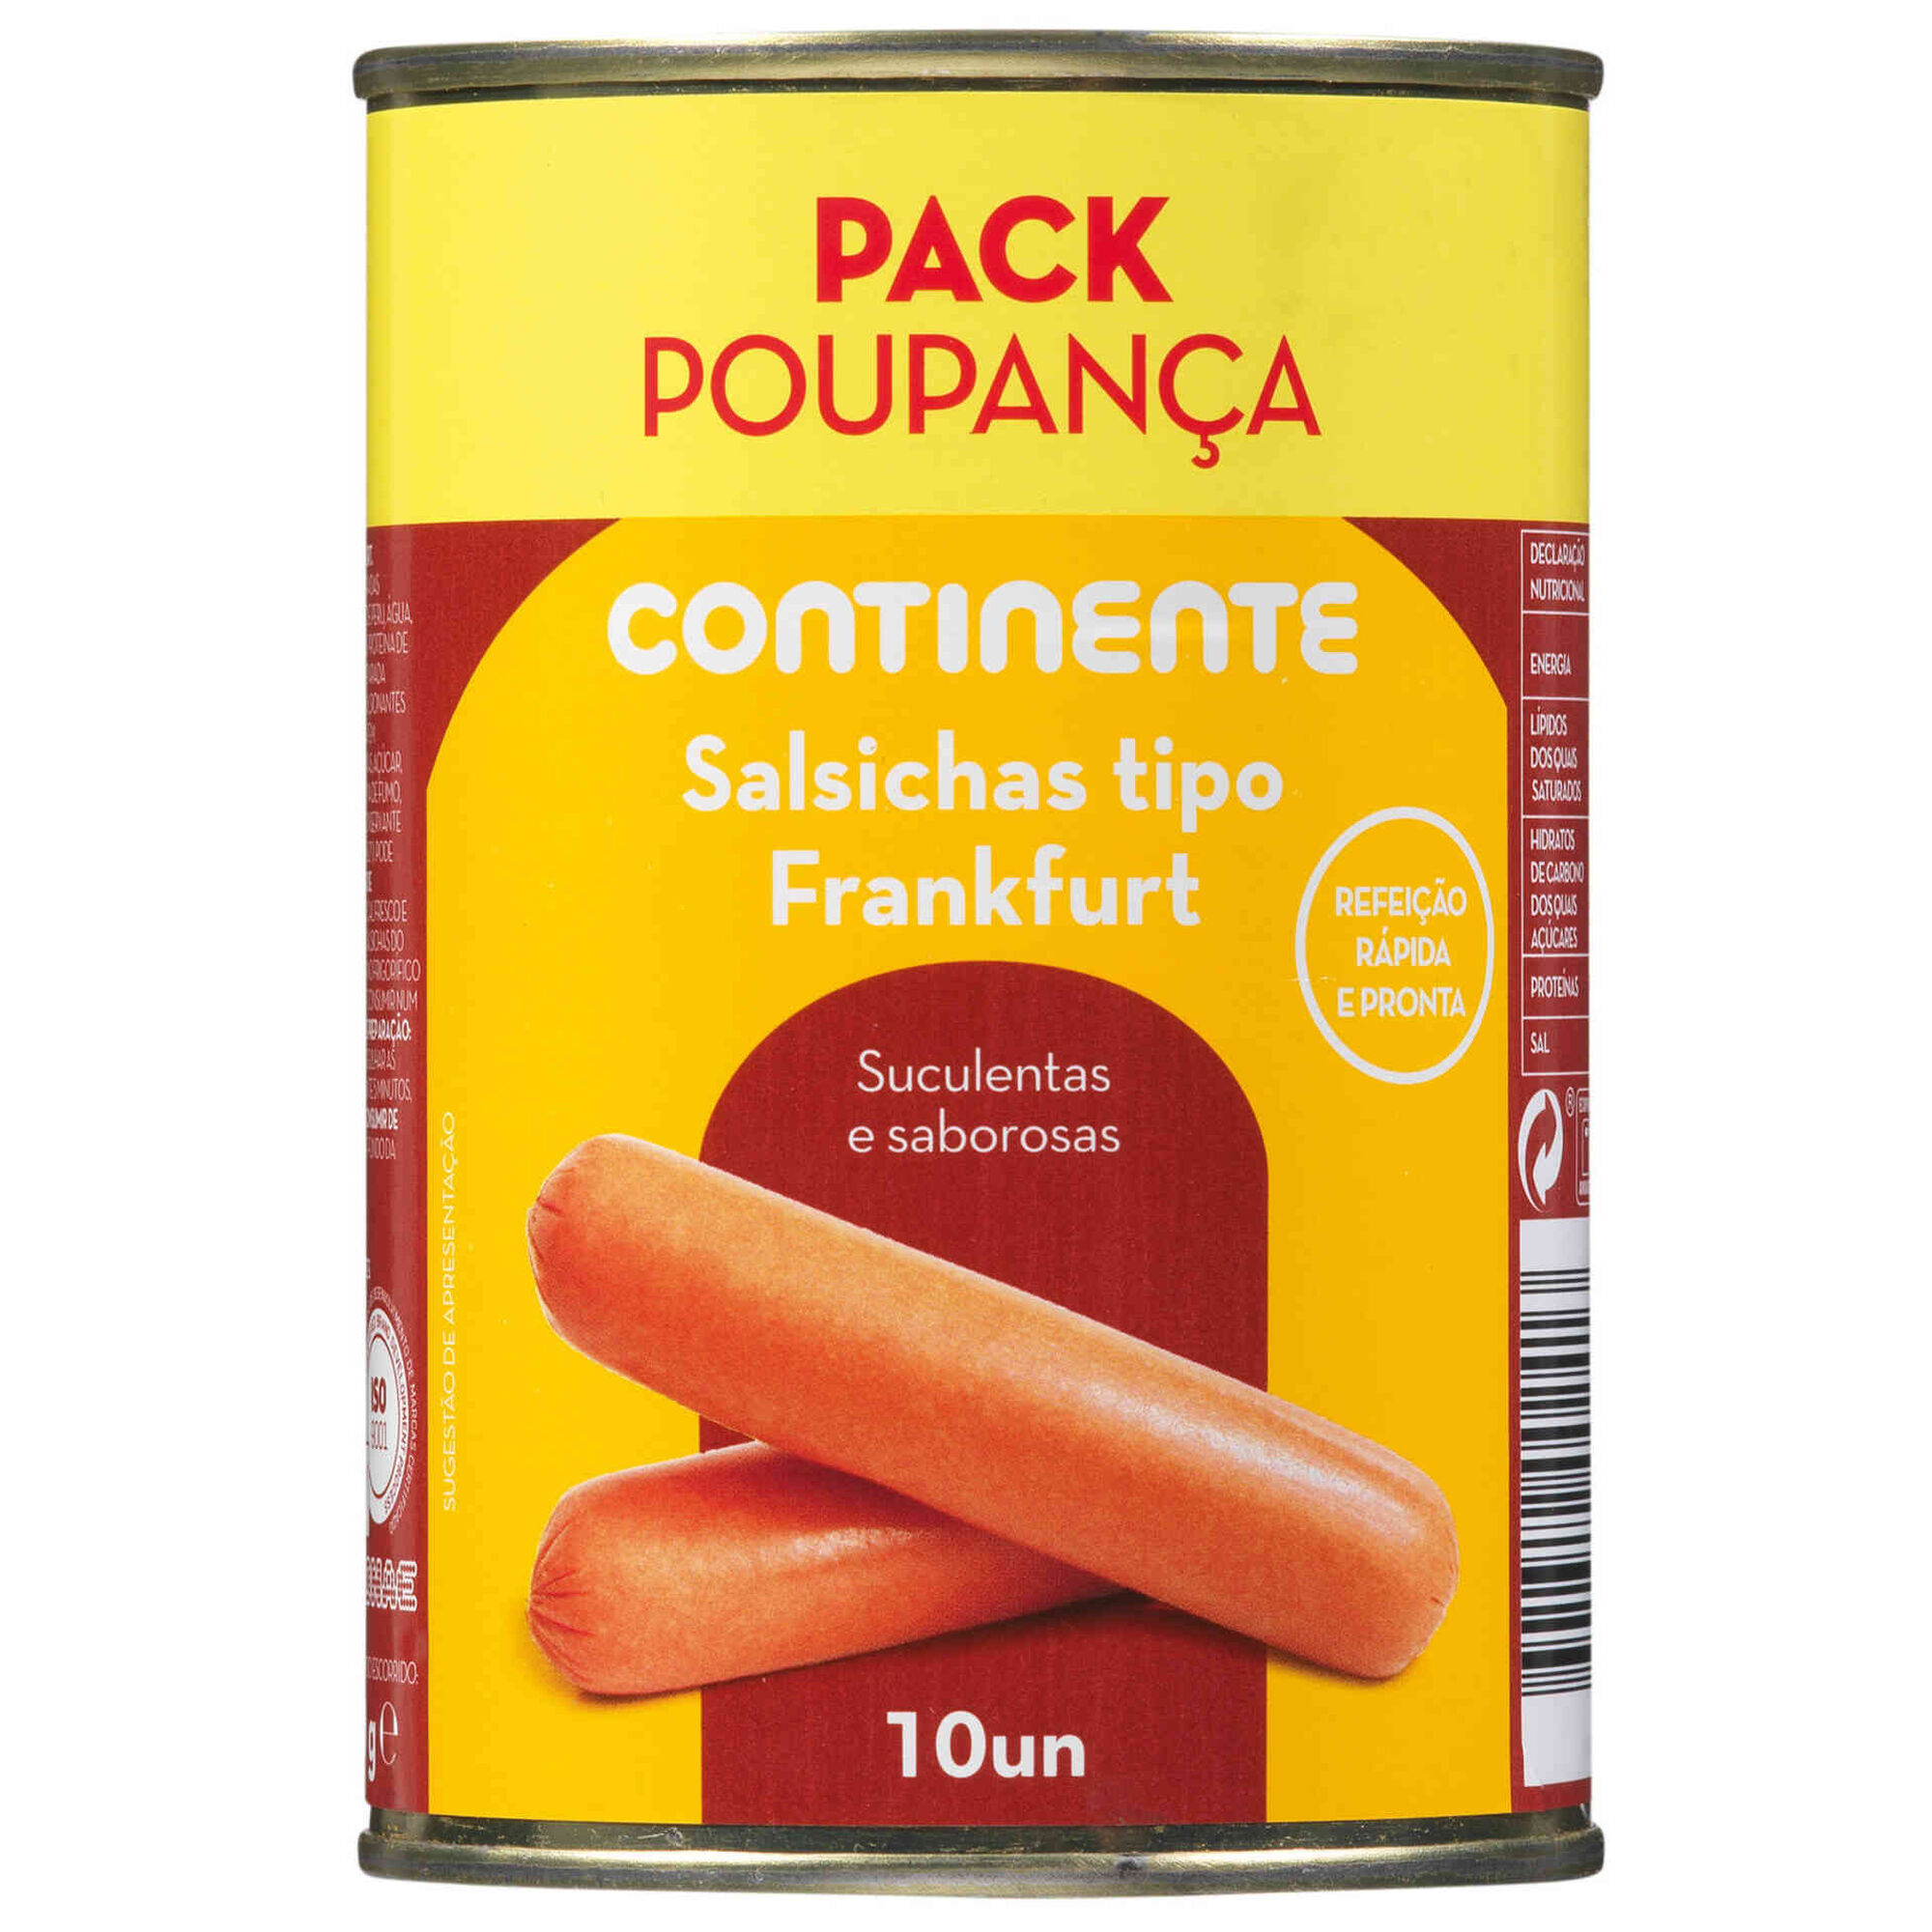 Salsichas Frankfurt Lata 10 un Pack Poupança